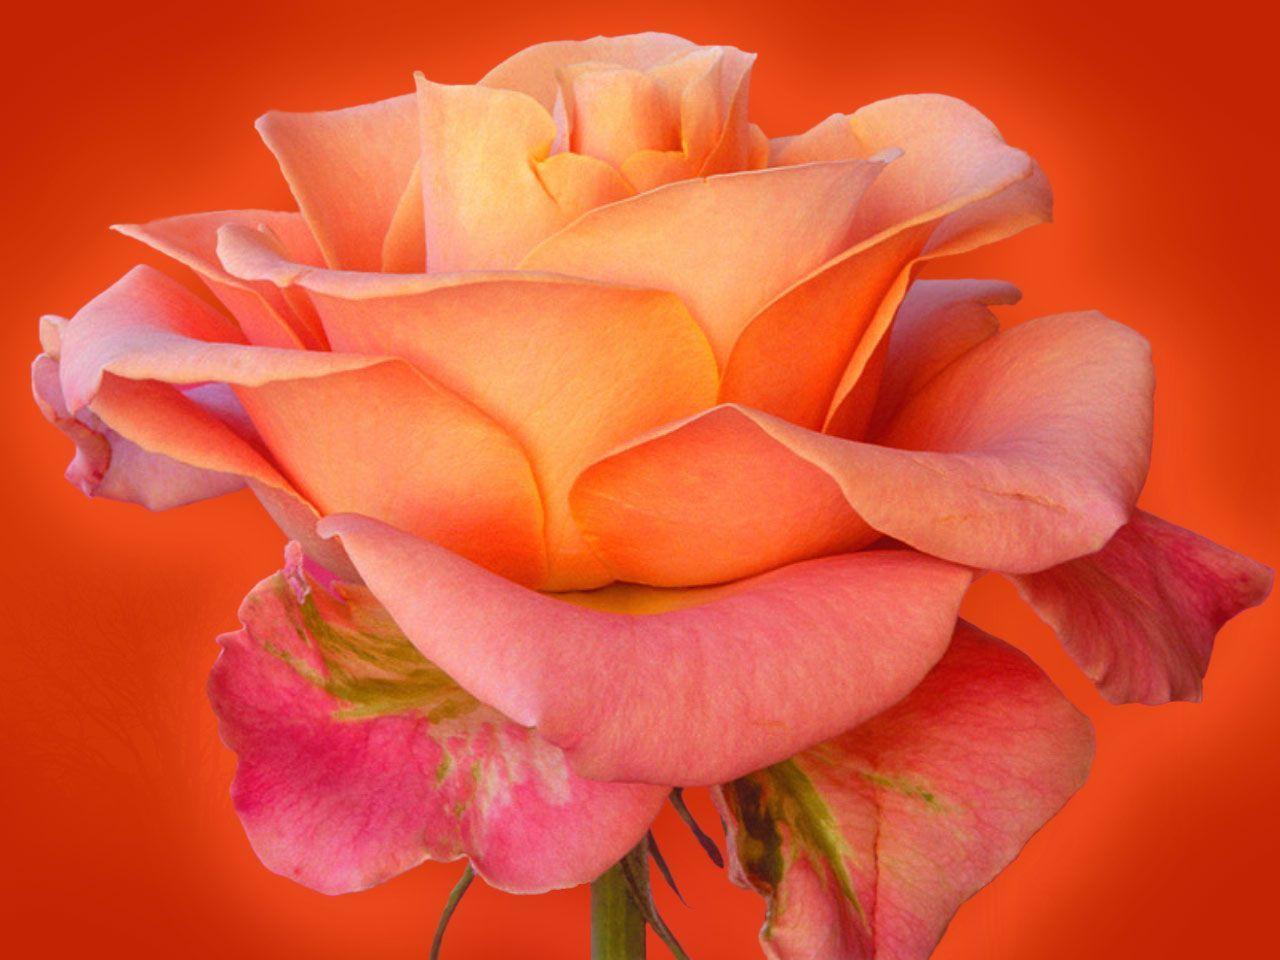 Flowers For > Rose Flowers Wallpaper For Desktop